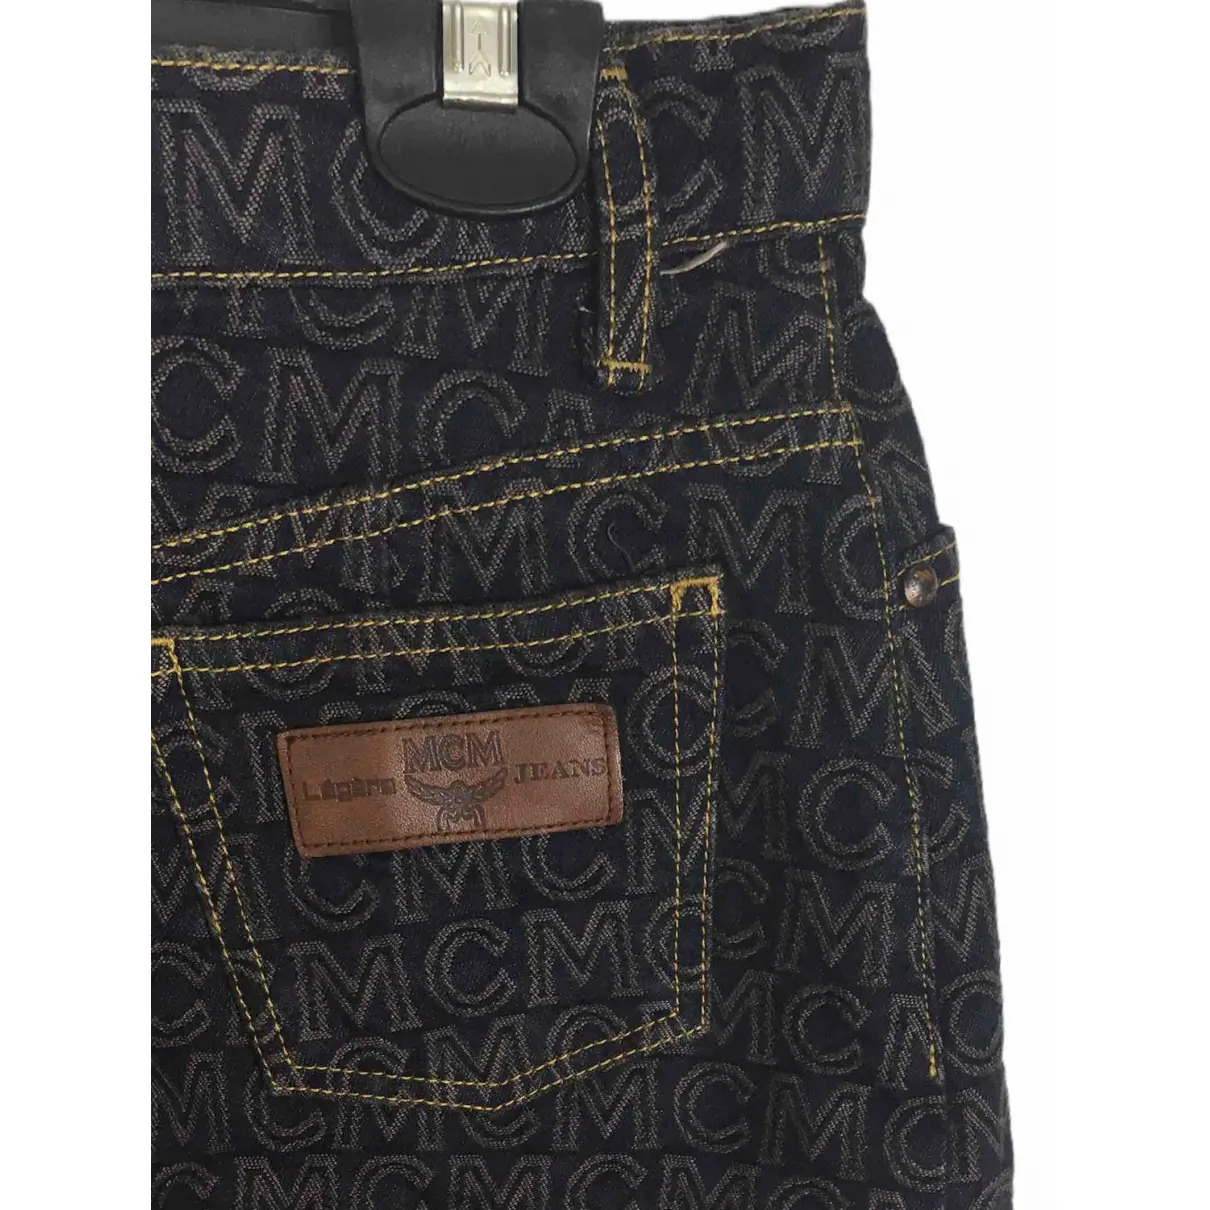 Buy MCM Mid-length skirt online